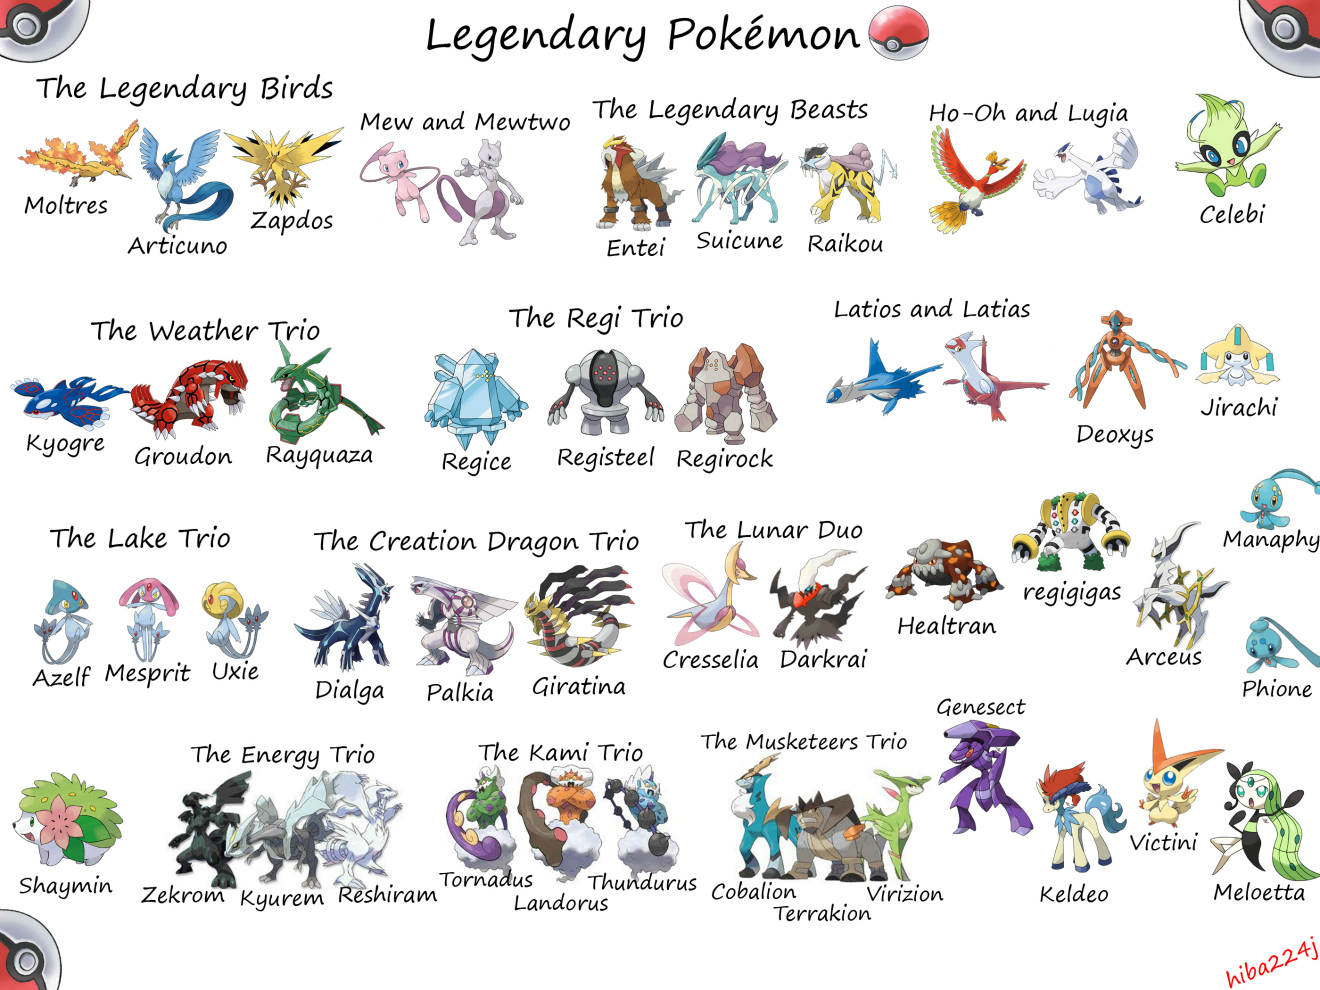 All Legendary Pokemon